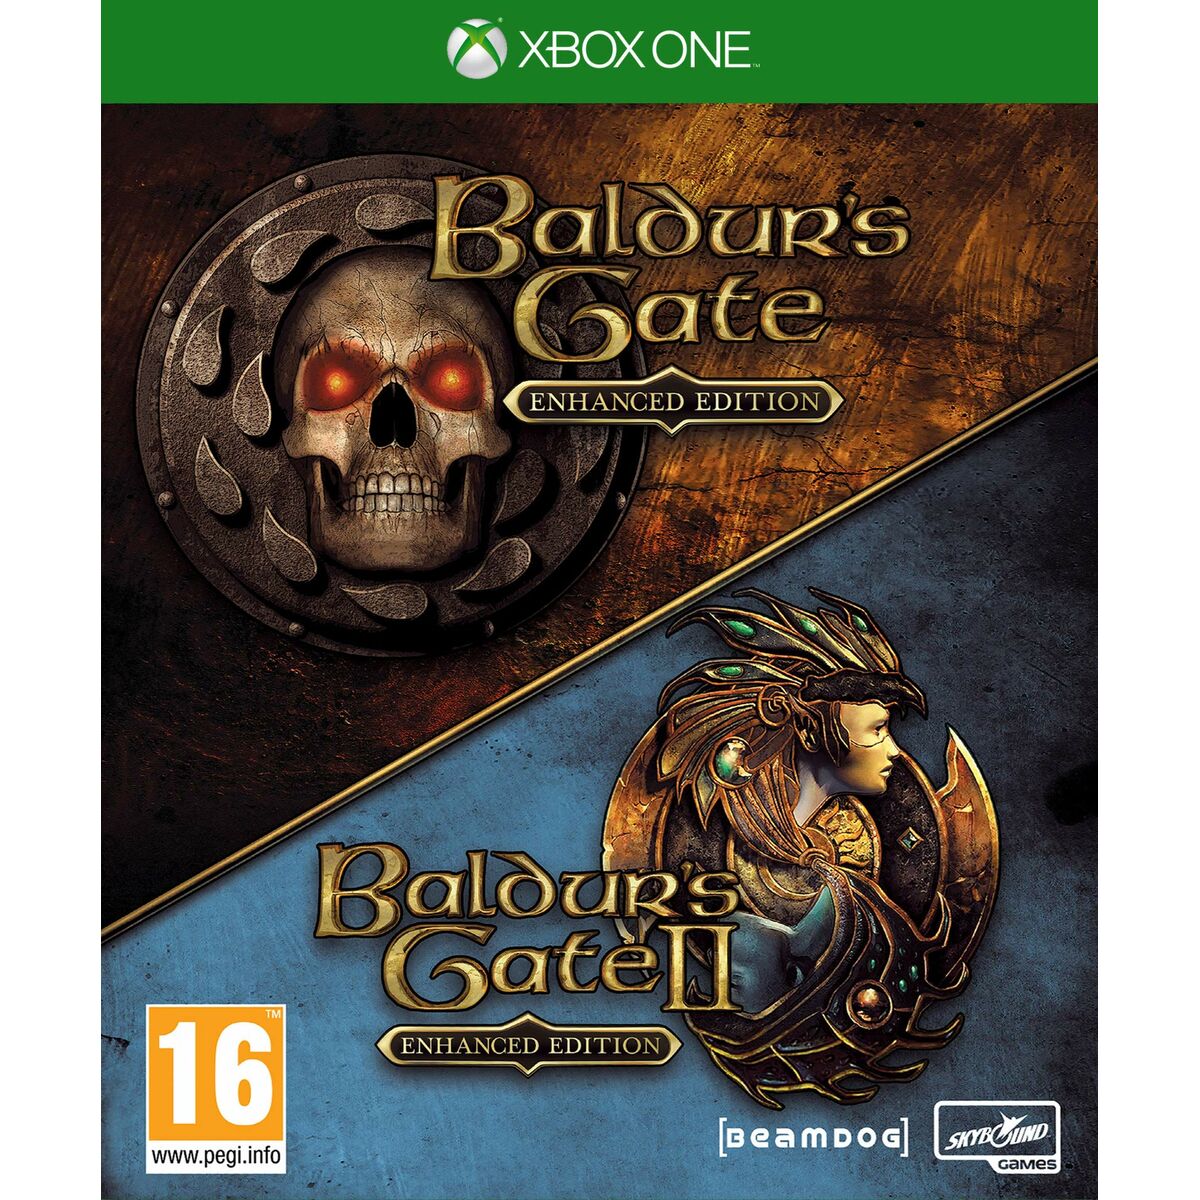 Jeu vidéo Xbox One Meridiem Games Baldurs Gate